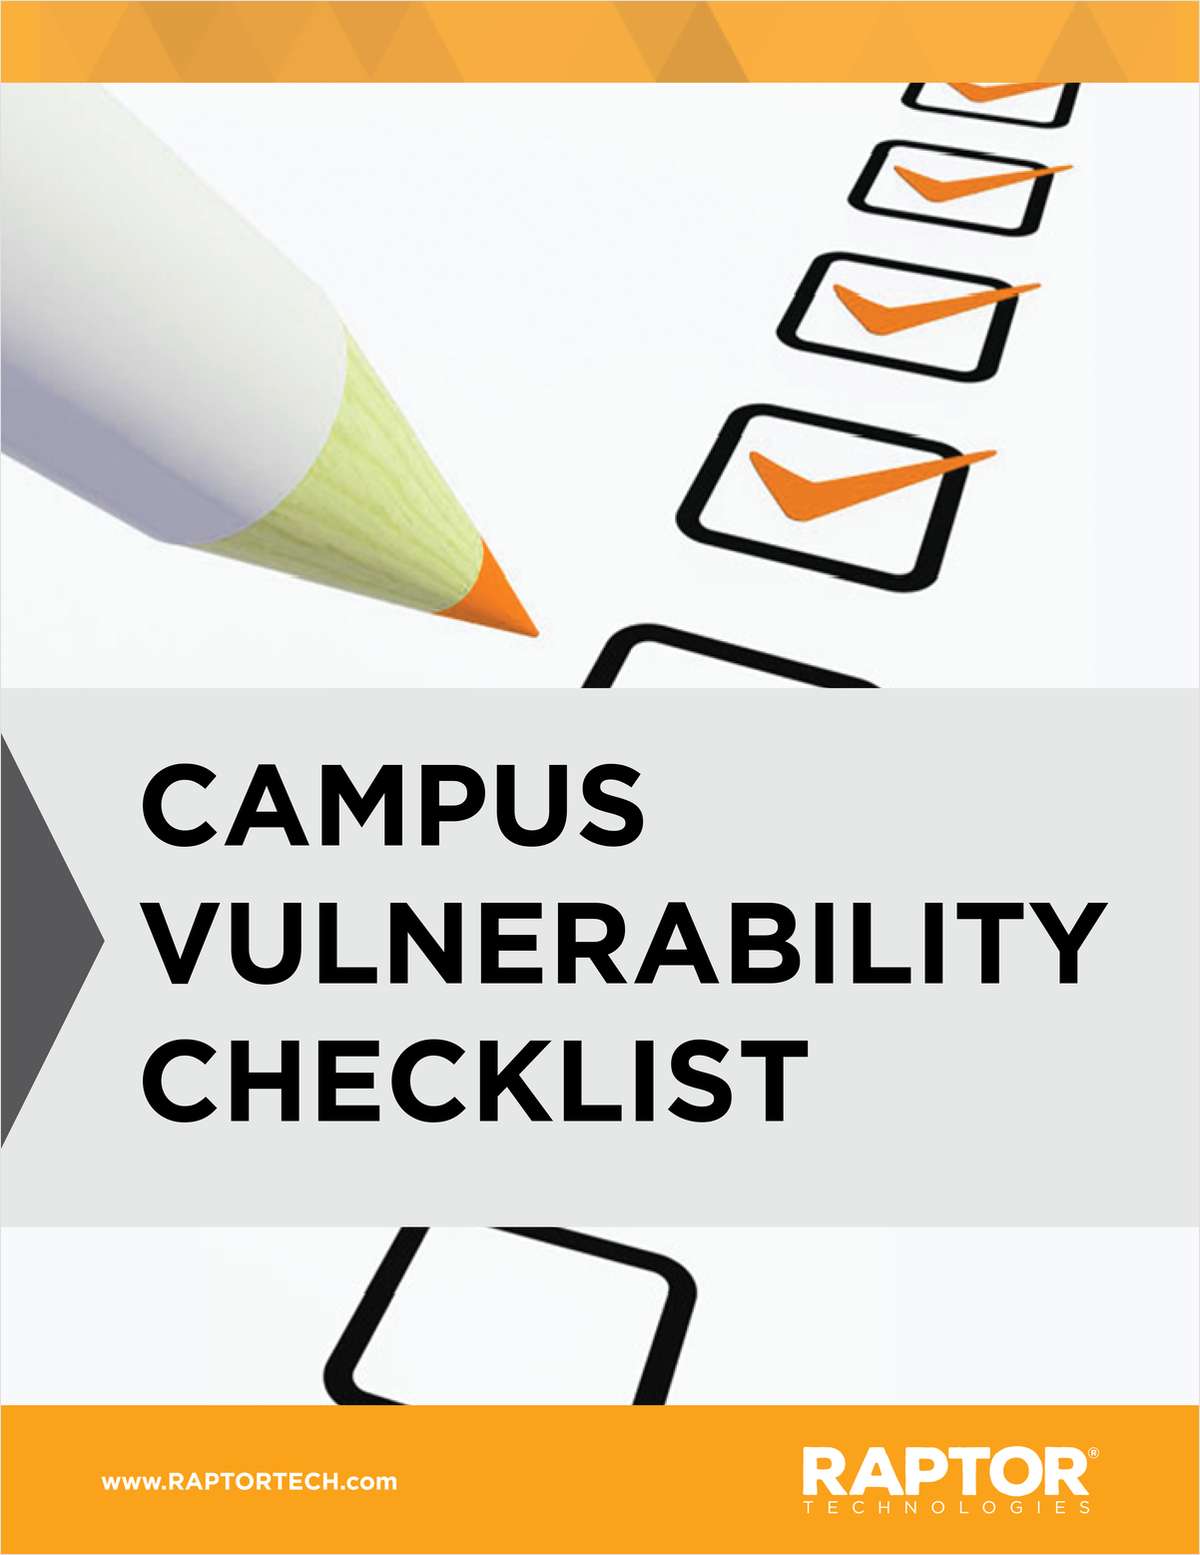 K-12: Campus Vulnerability Checklist